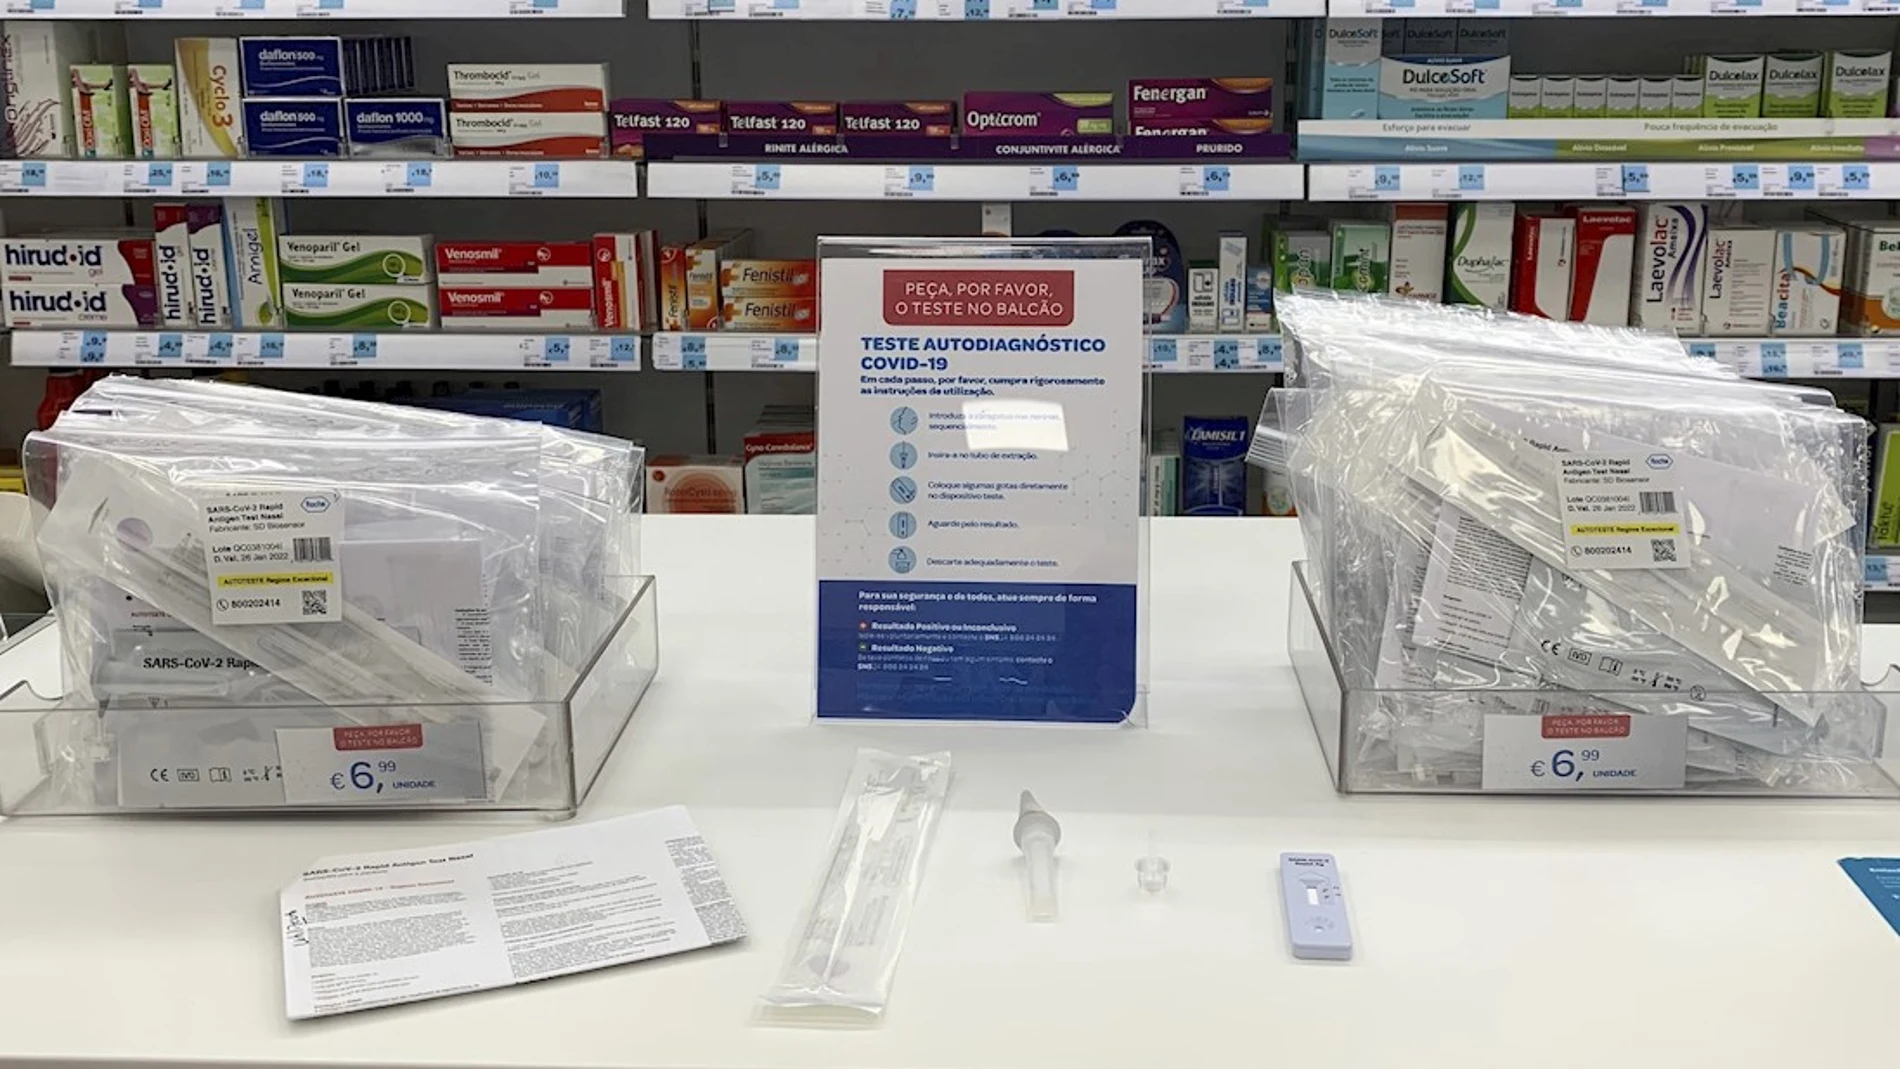 Todo lo que necesitas saber sobre los test de autodiagnóstico de la COVID-19 que se venden en farmacias sin prescripción médica